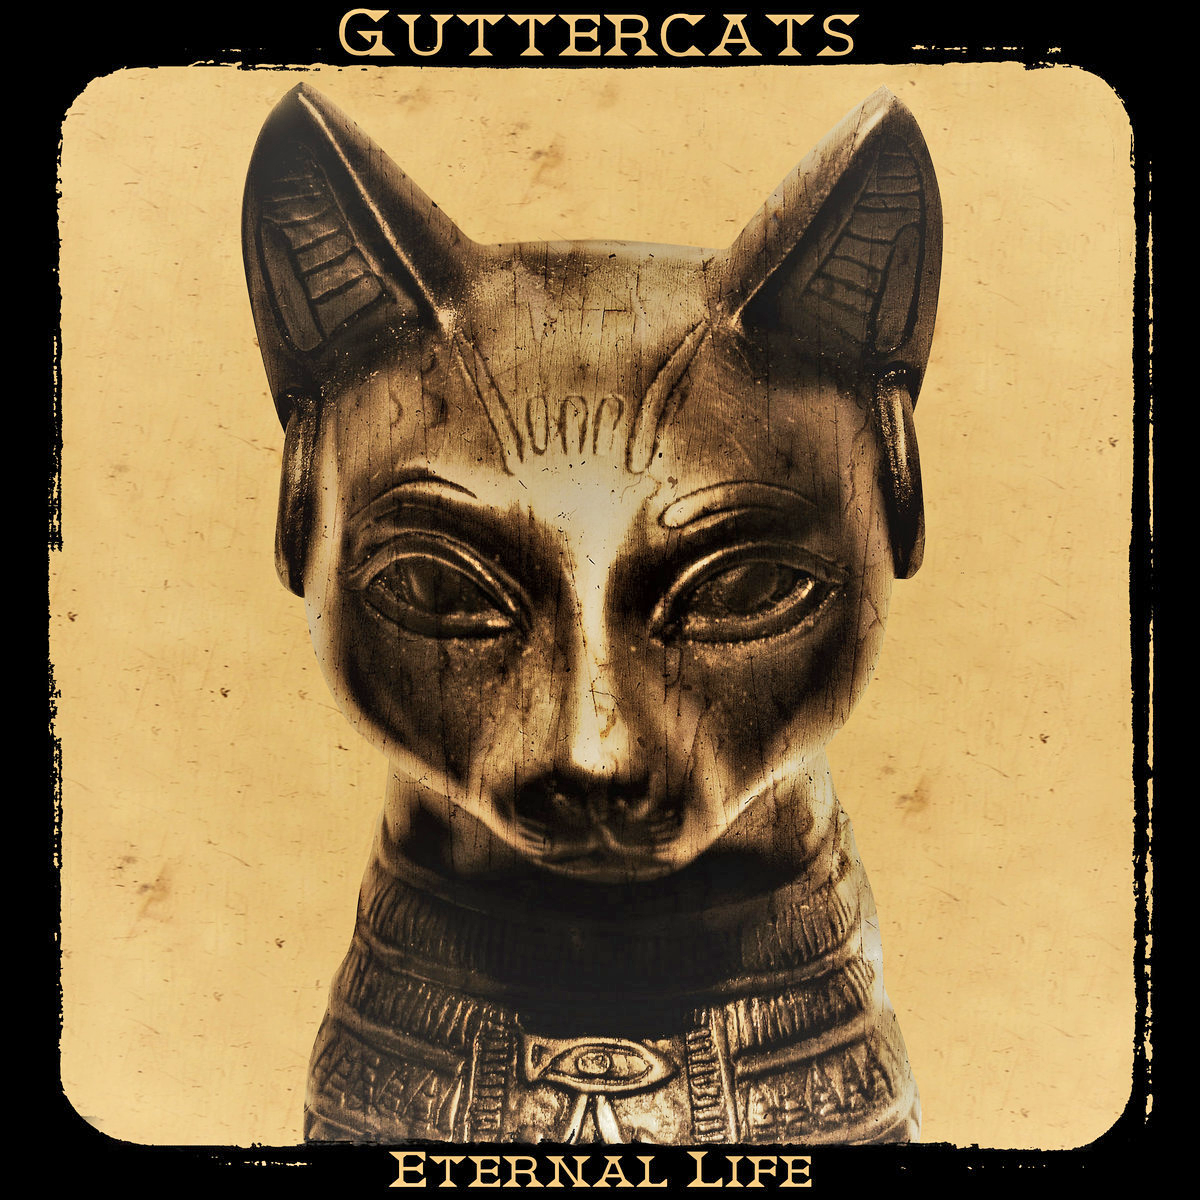 Guttercats- Eternal Life LP ~HANOI ROCKS!